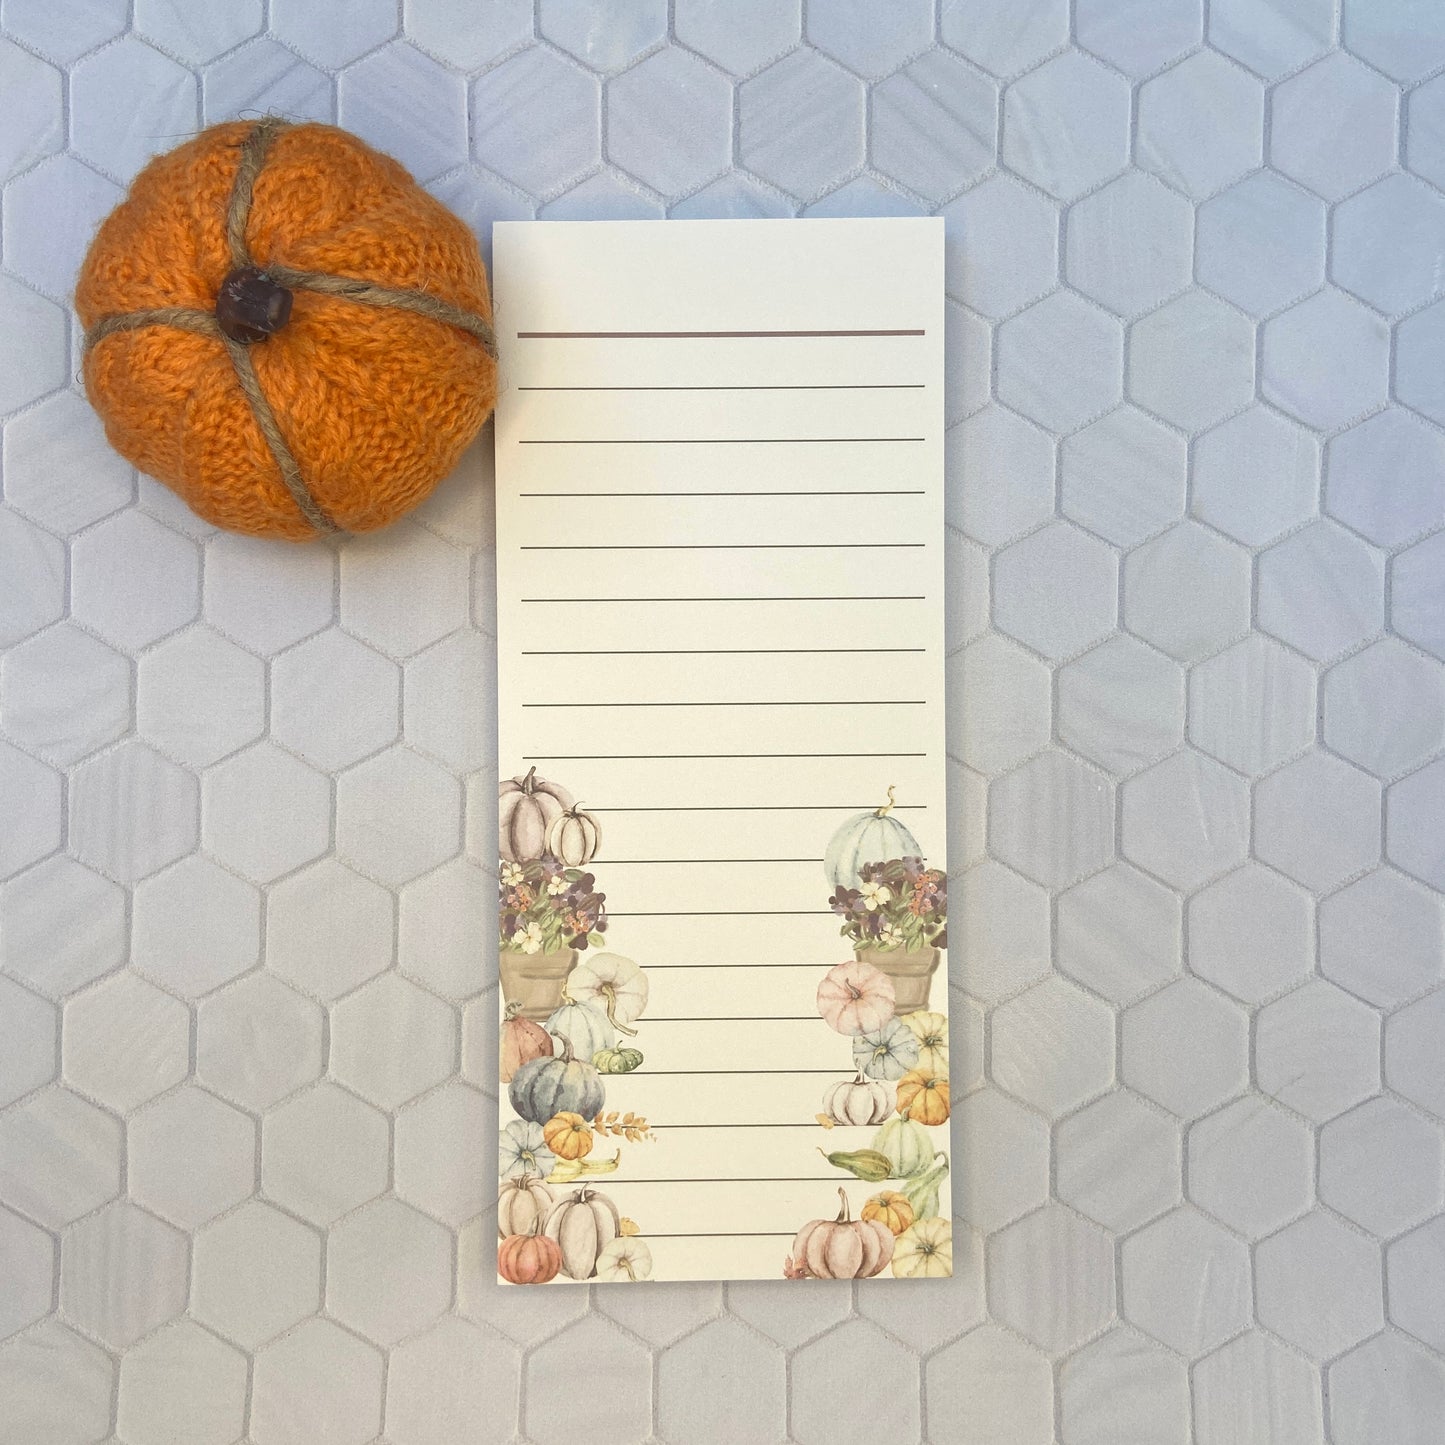 Fall Pumpkins & Florals "To-Do-List" Notepad